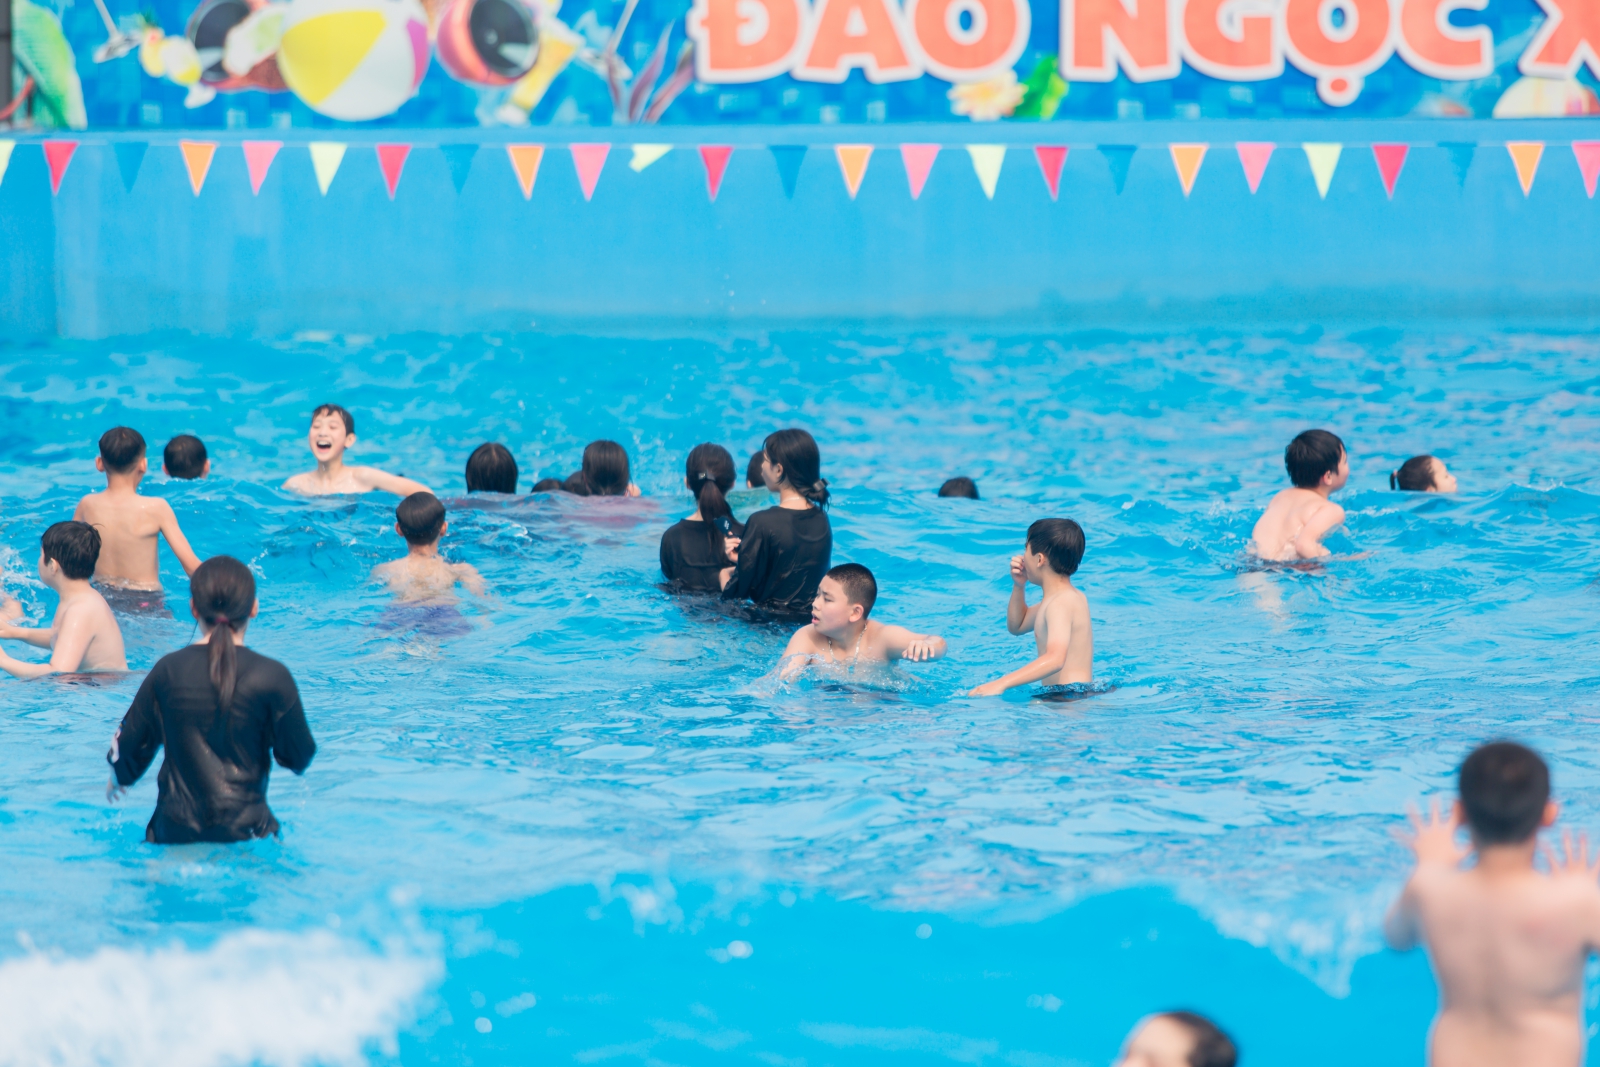 Bể bơi tắm sóng nhân tạo tại khu du lịch Đảo Ngọc Xanh